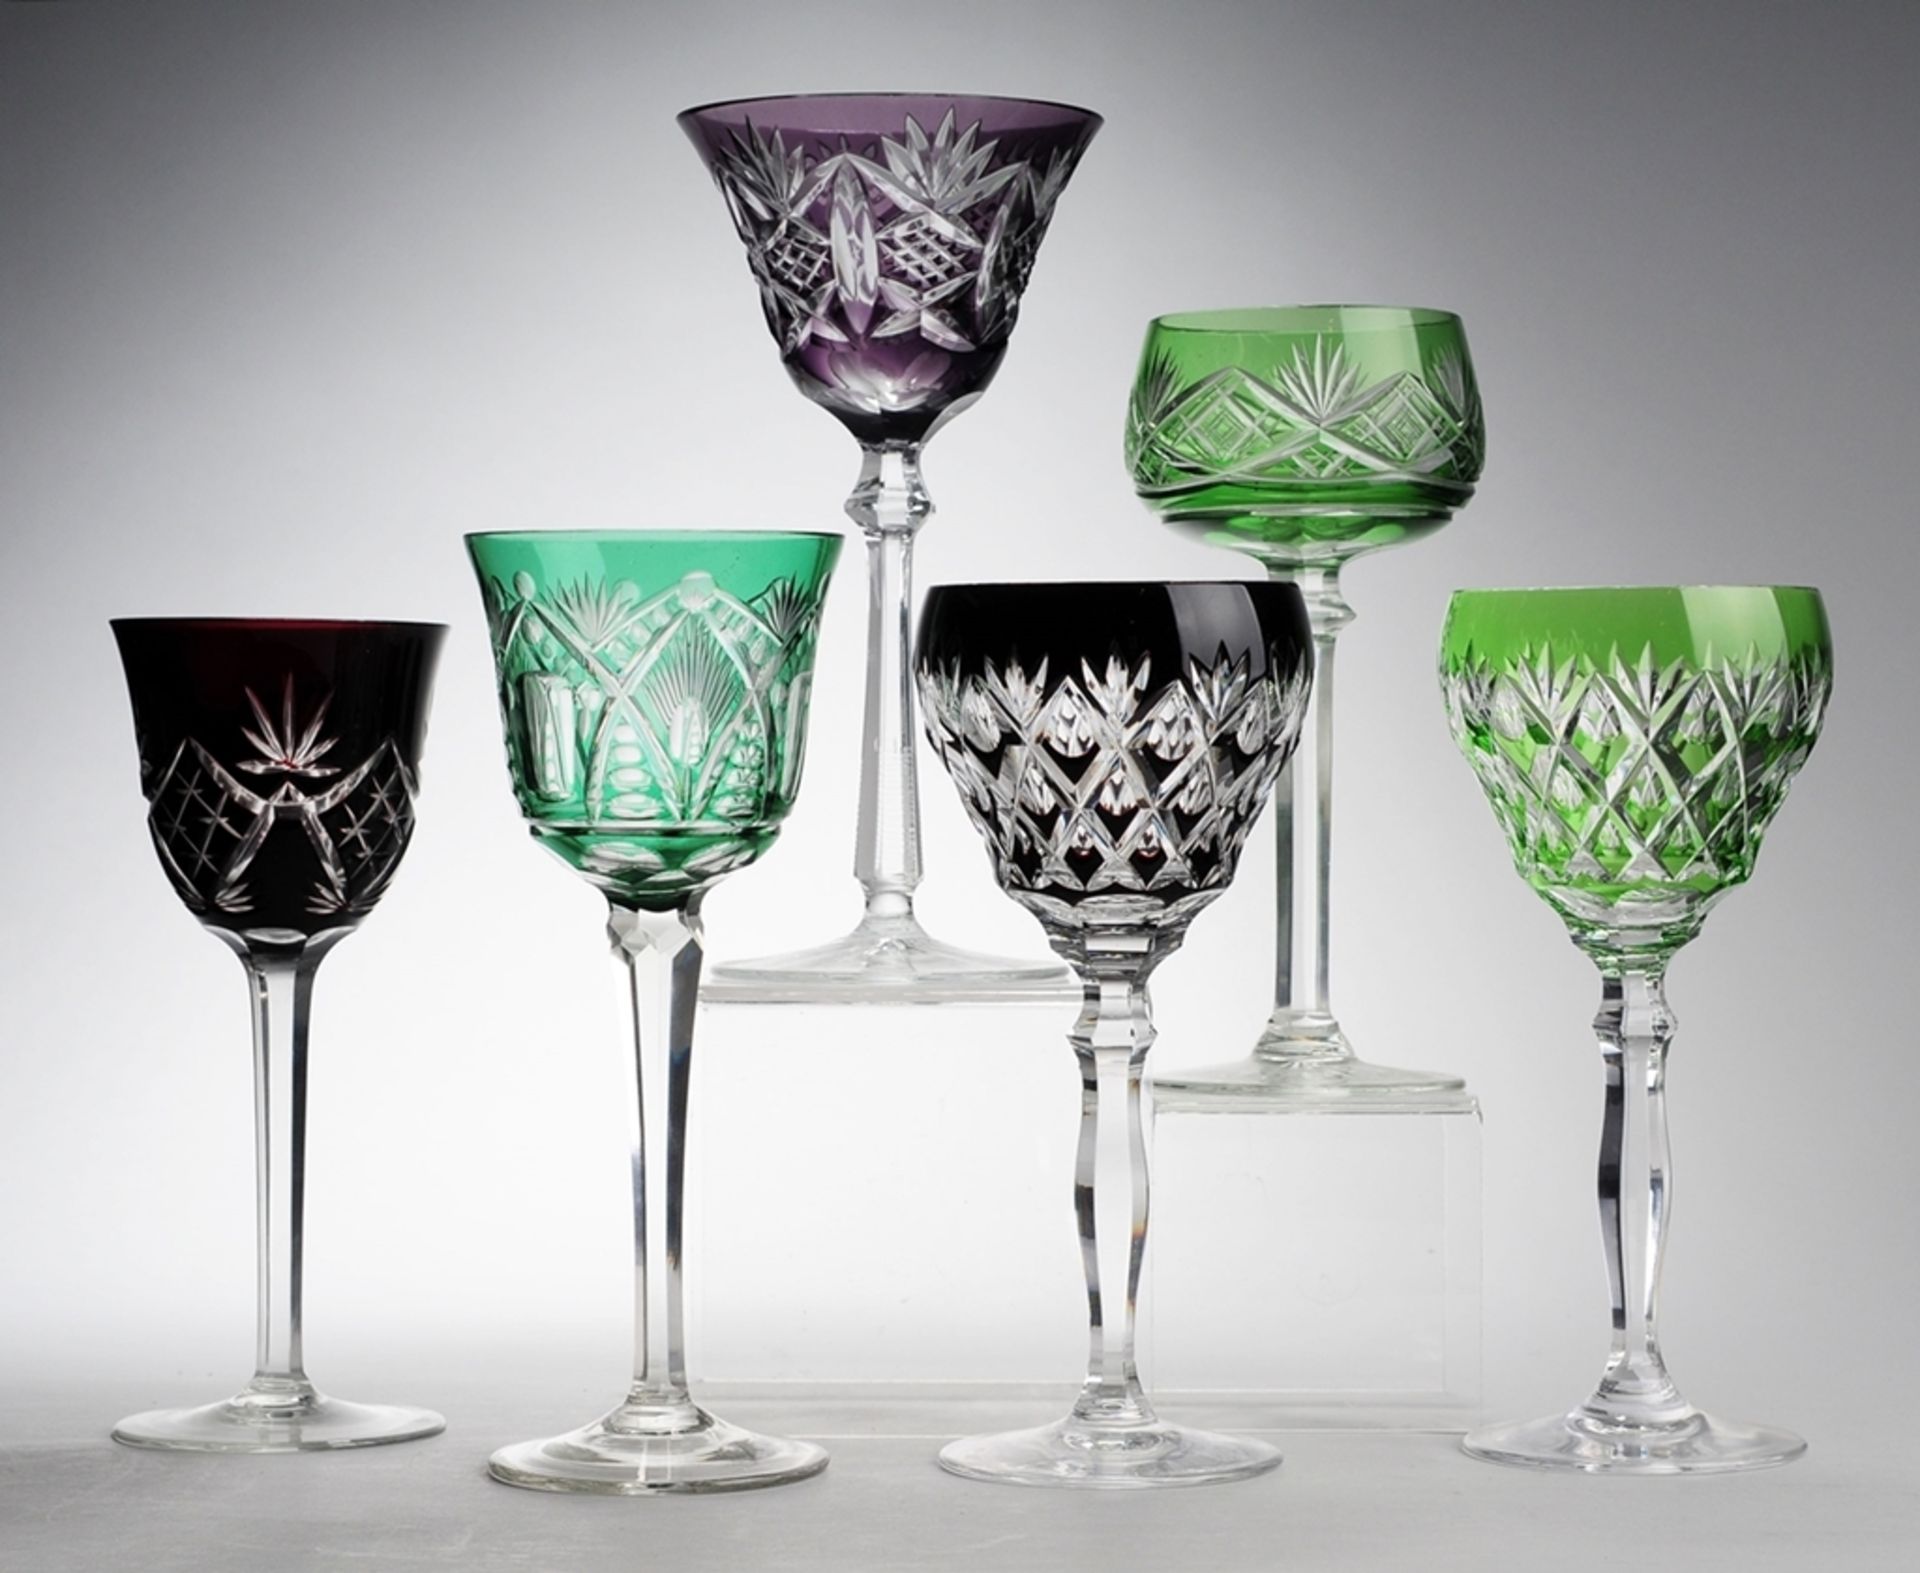 Konvolut Römer6-tlg. Farbloses Kristallglas, part. grün, dunkelrot bzw. violett überfangen